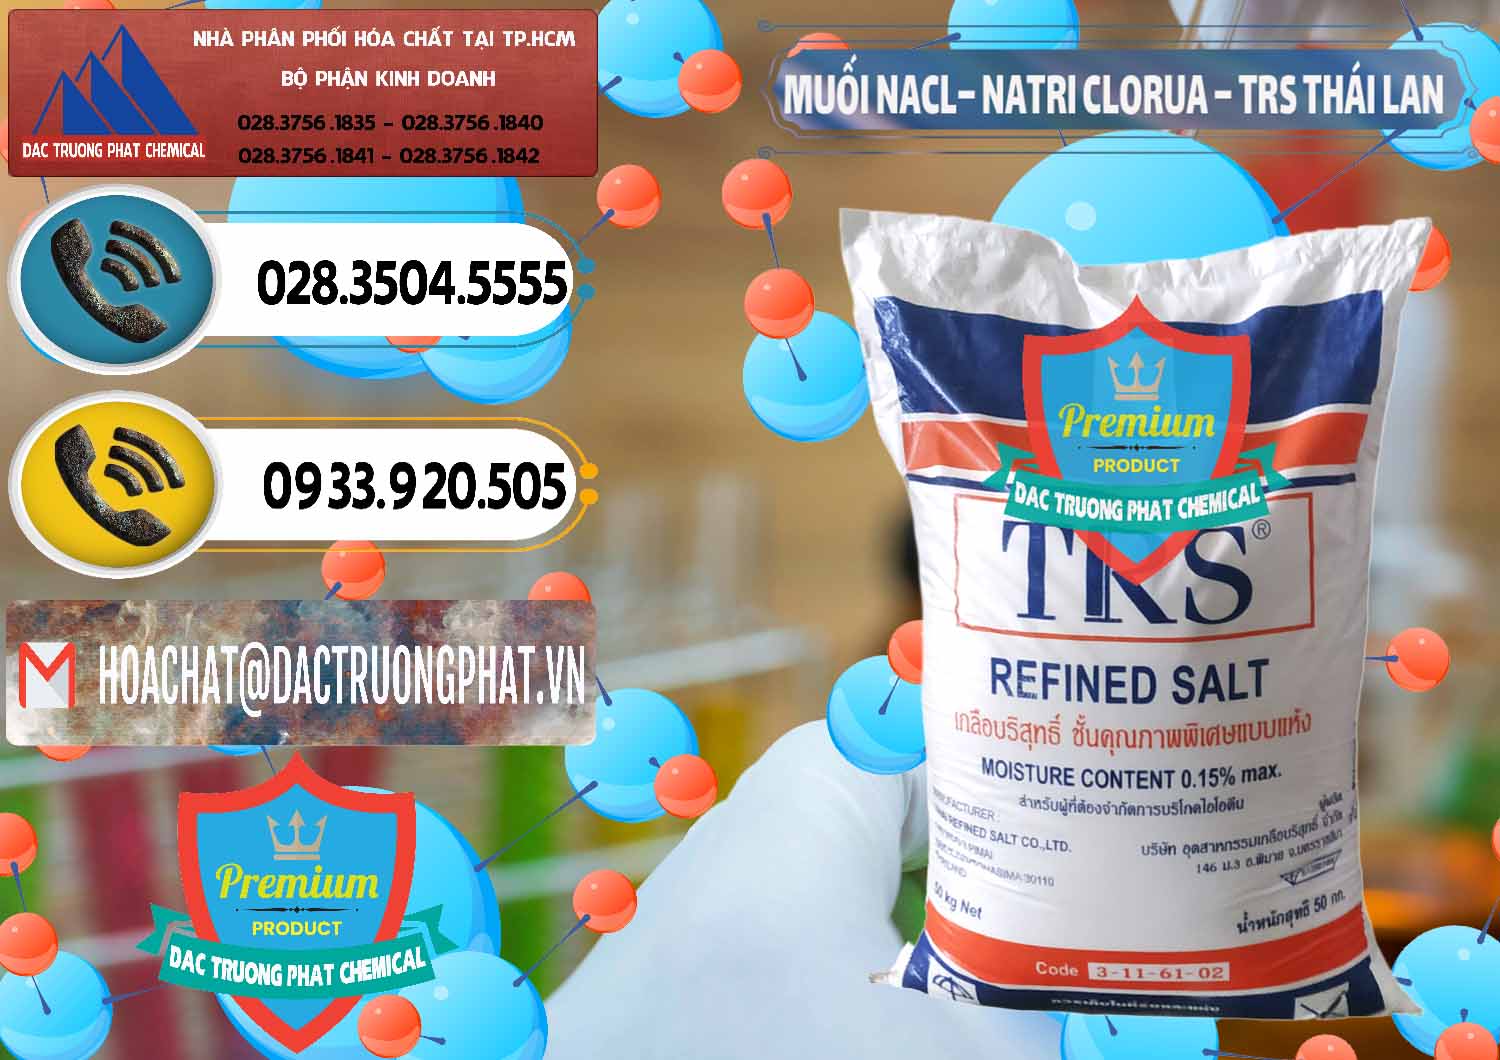 Cung cấp _ bán Muối NaCL – Sodium Chloride TRS Thái Lan - 0096 - Cty phân phối ( kinh doanh ) hóa chất tại TP.HCM - hoachatdetnhuom.vn